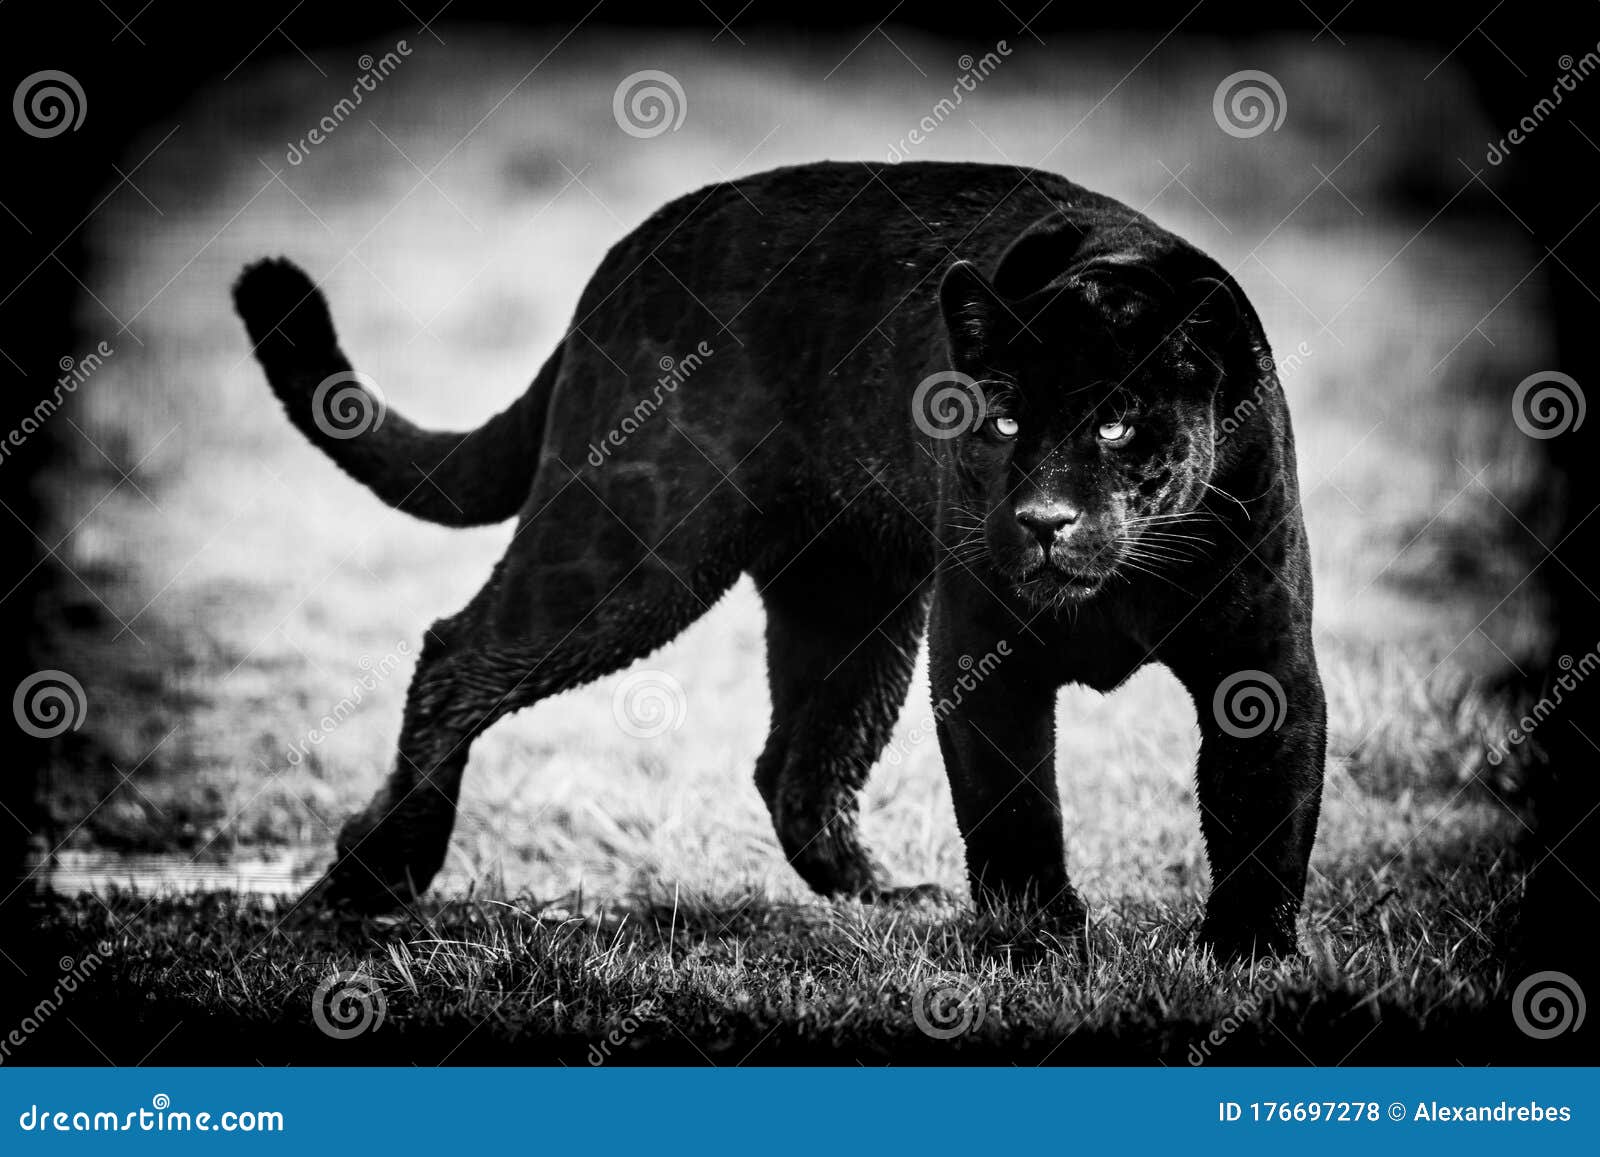 Black Jaguar Live Wallpaper APK for Android Download